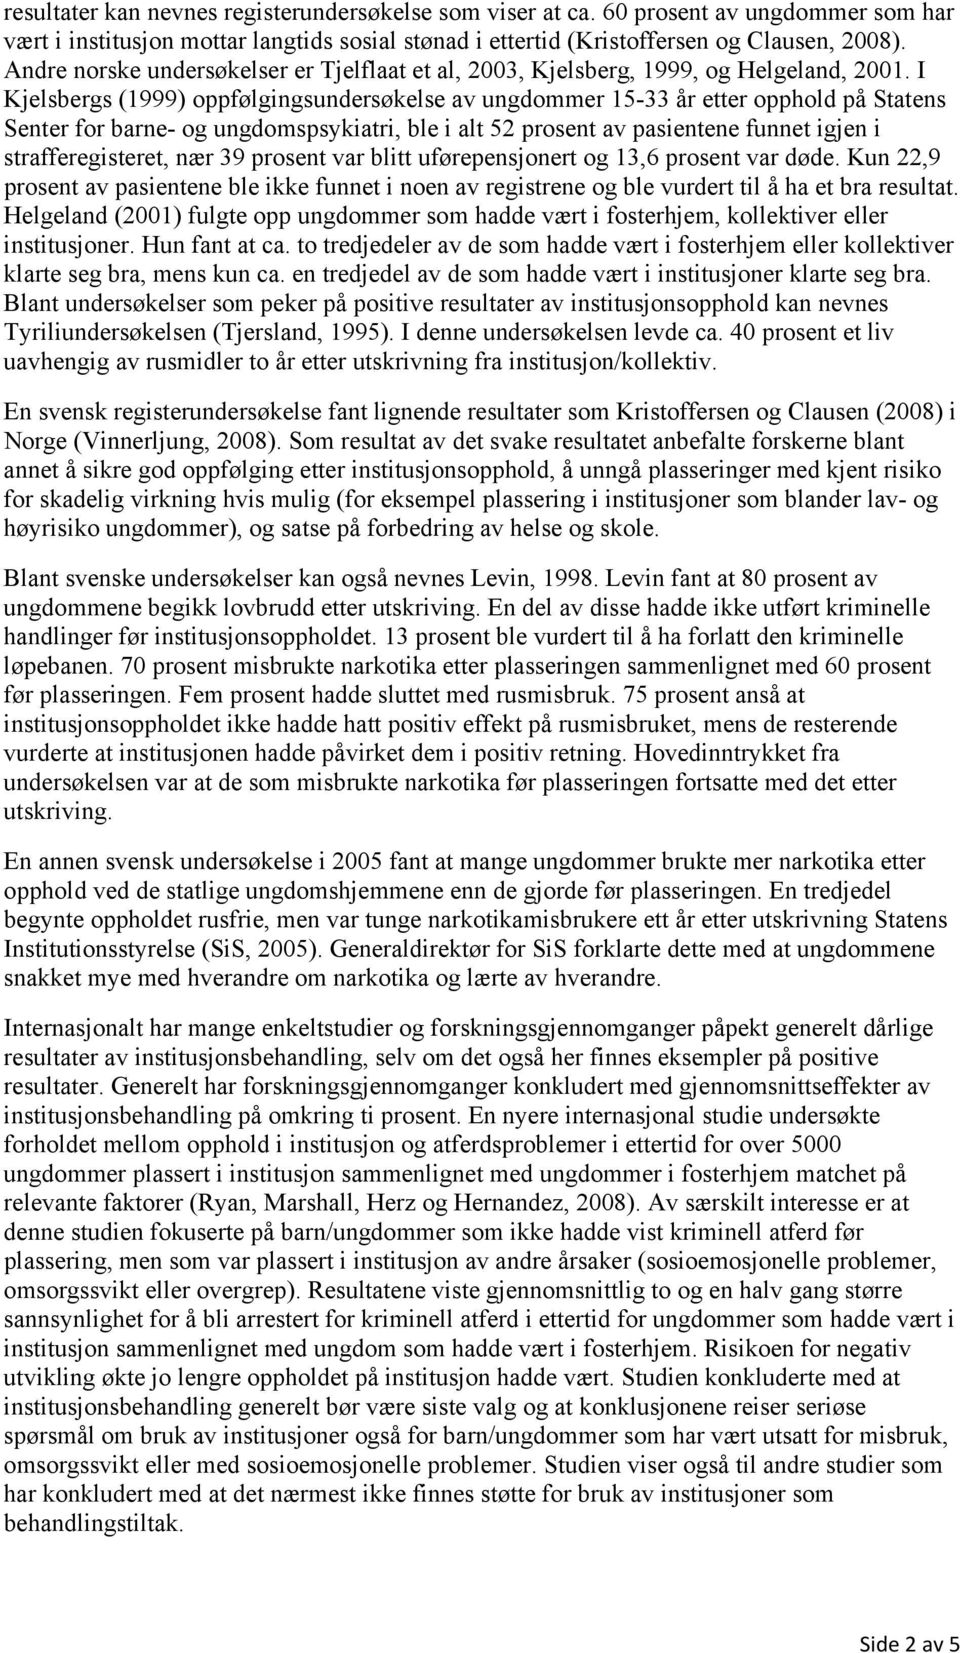 I Kjelsbergs (1999) oppfølgingsundersøkelse av ungdommer 15-33 år etter opphold på Statens Senter for barne- og ungdomspsykiatri, ble i alt 52 prosent av pasientene funnet igjen i strafferegisteret,